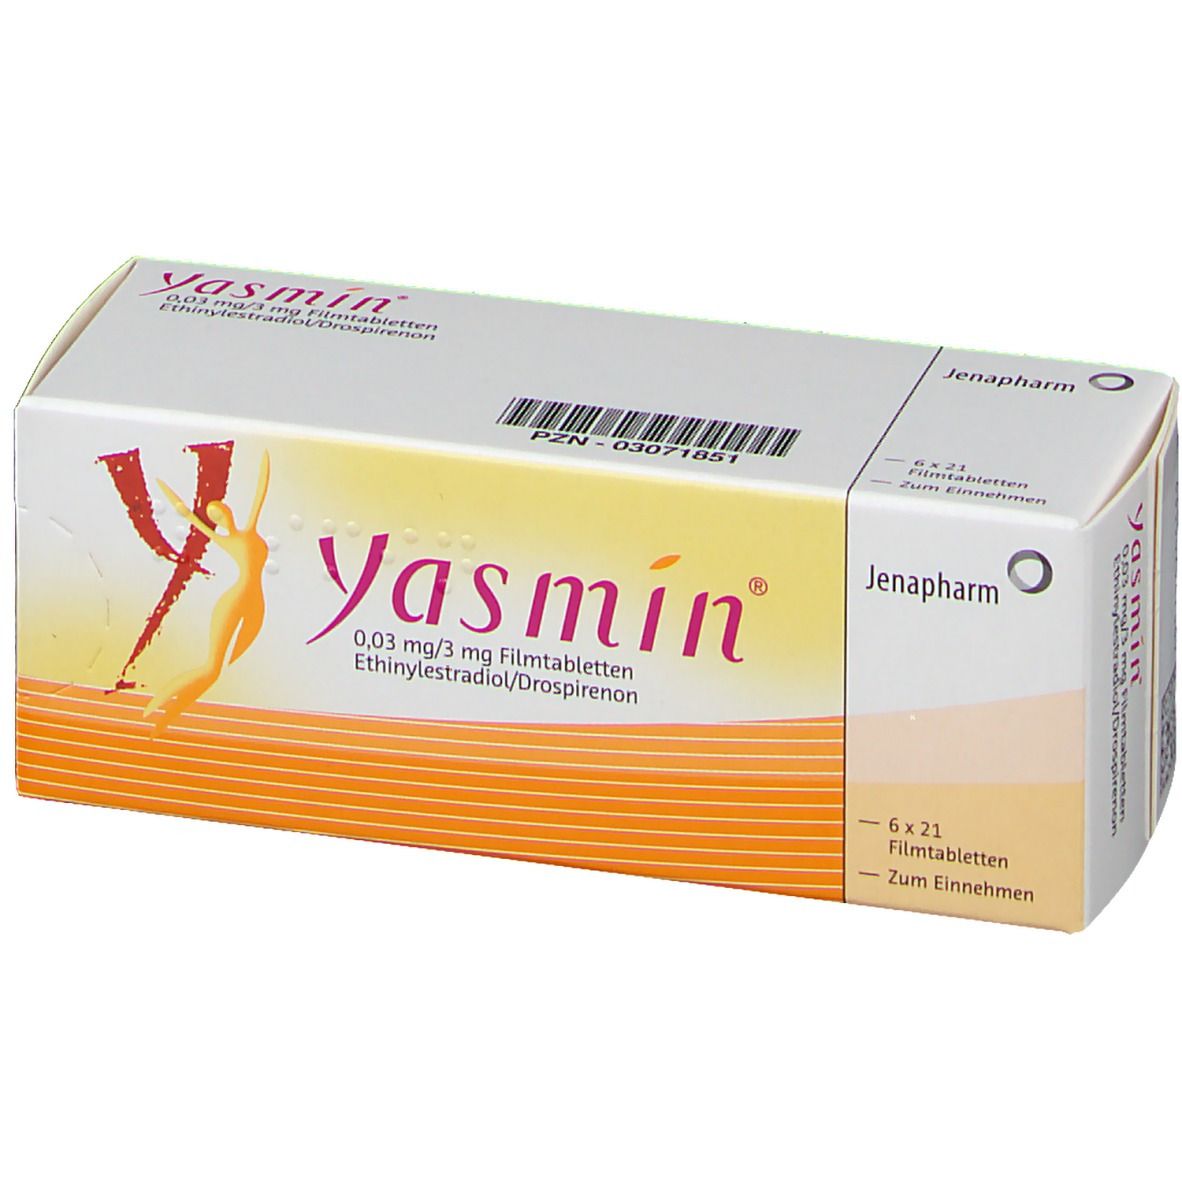 Yasmin® 0,03 mg/3 mg